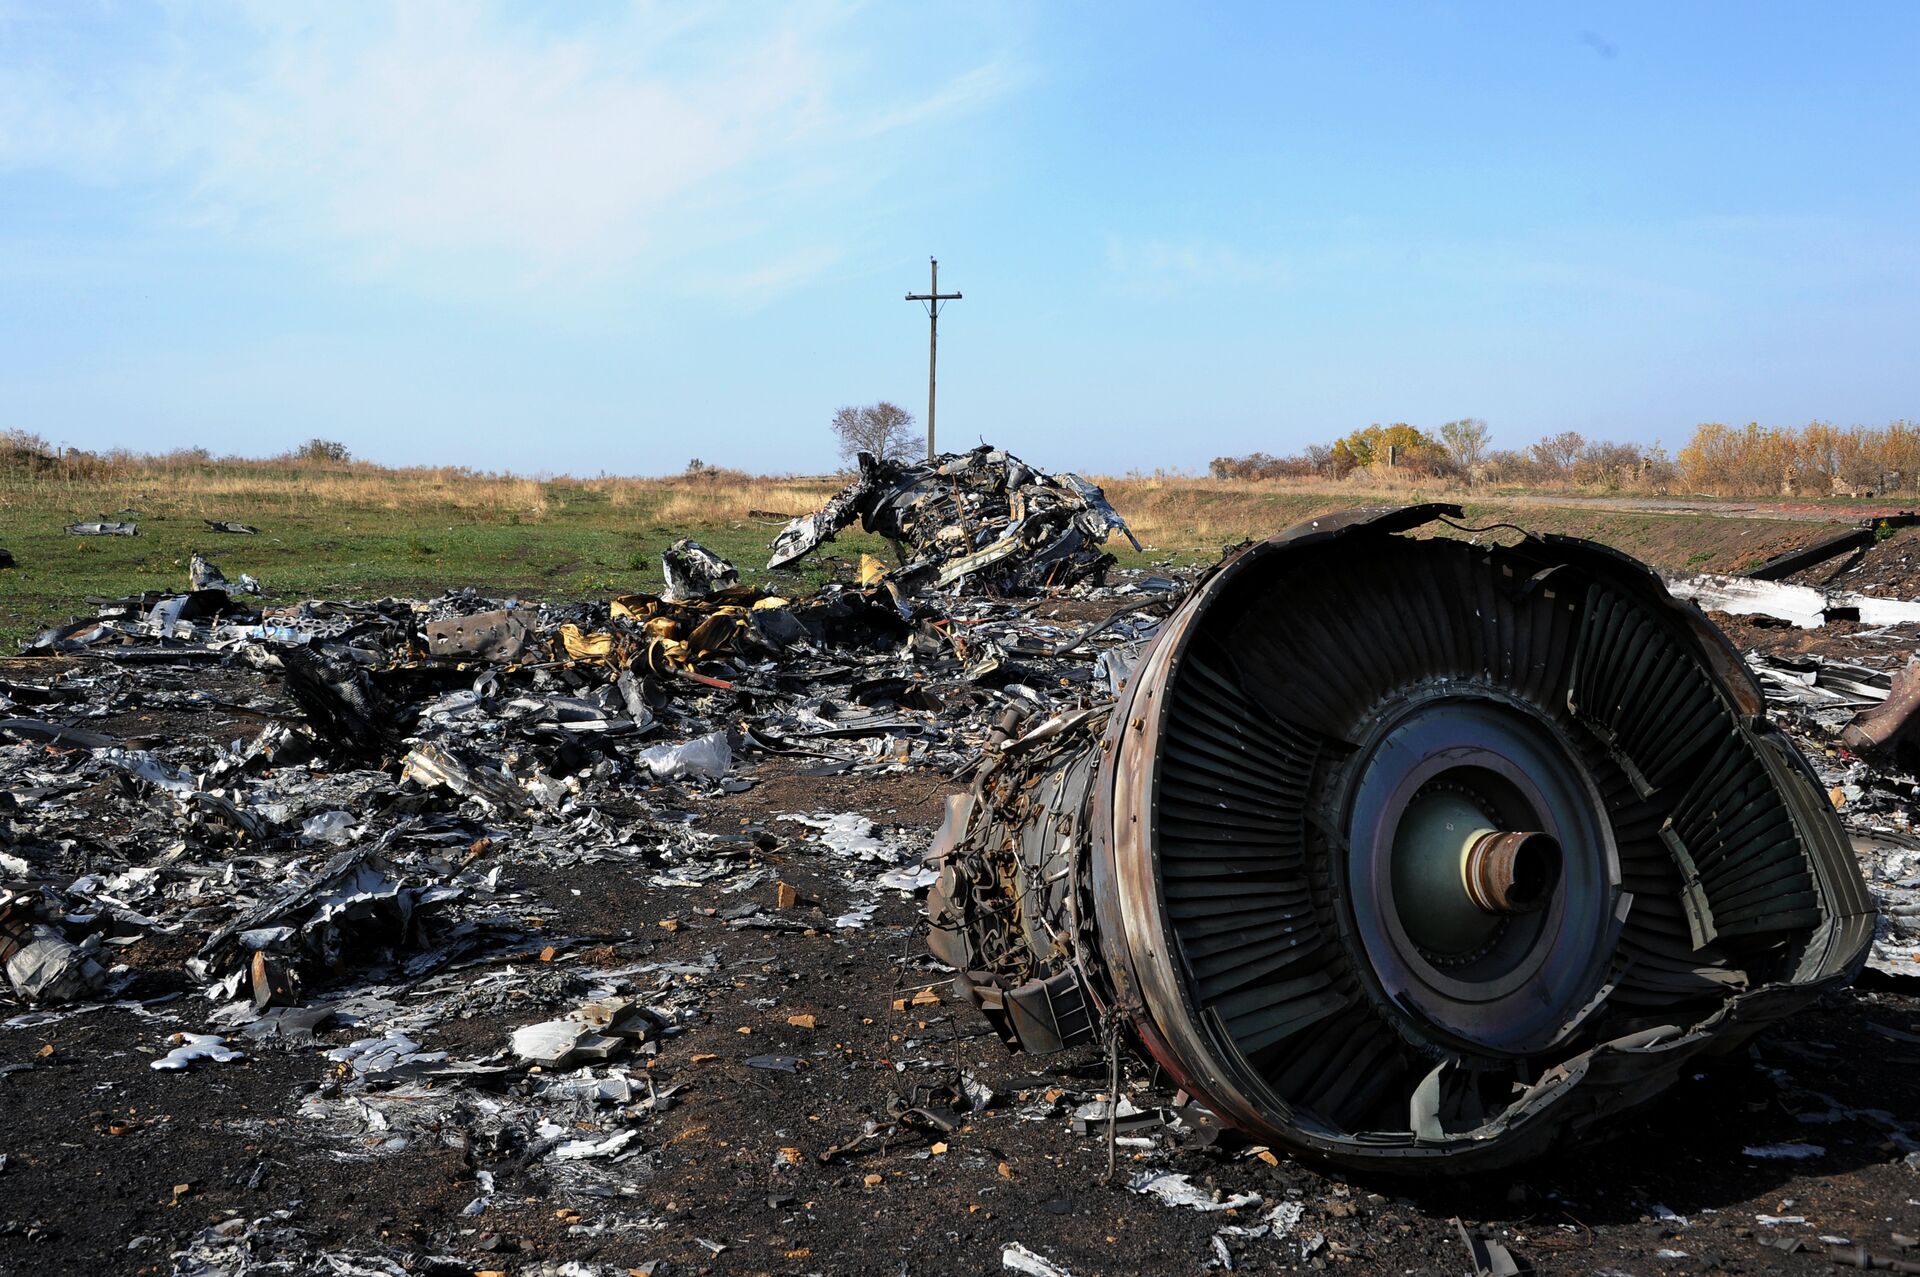 Voo MH17: tribunal concorda em adicionar relatórios de estatal russa, mas recusa acesso a destroços - Sputnik Brasil, 1920, 08.02.2021